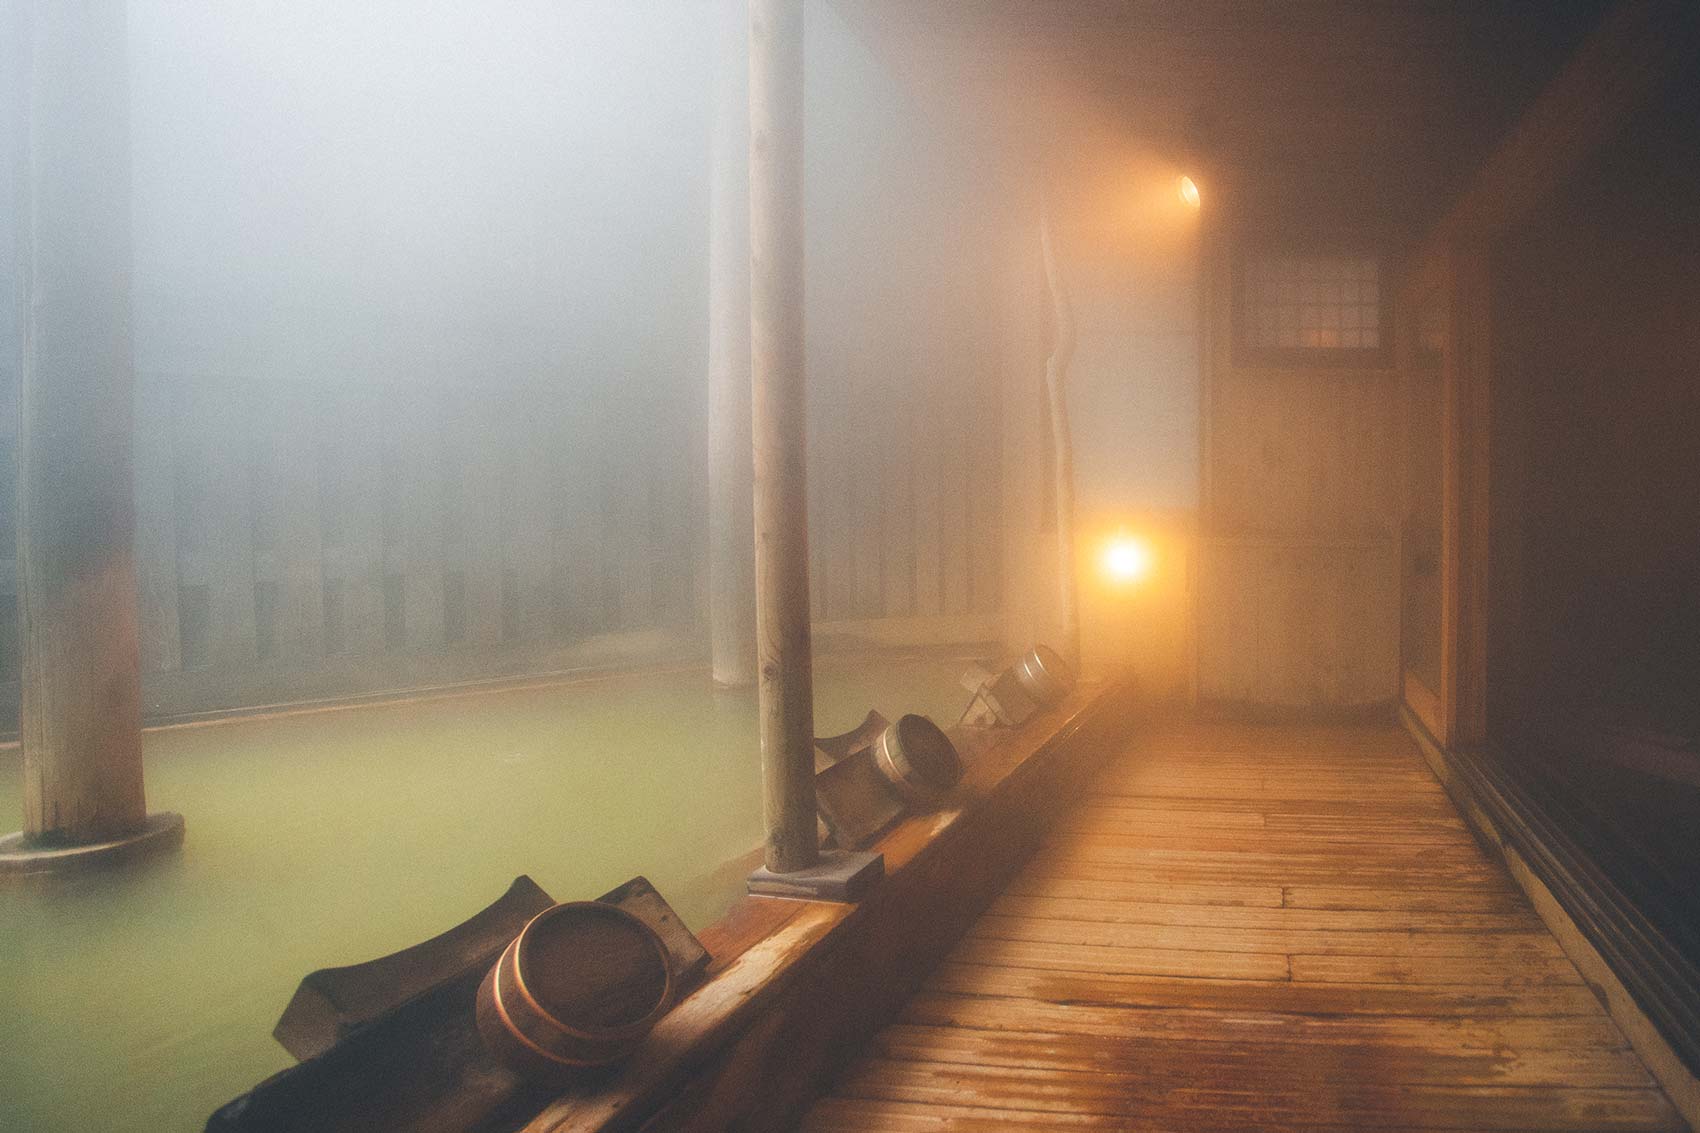 Misty onsen in Japan